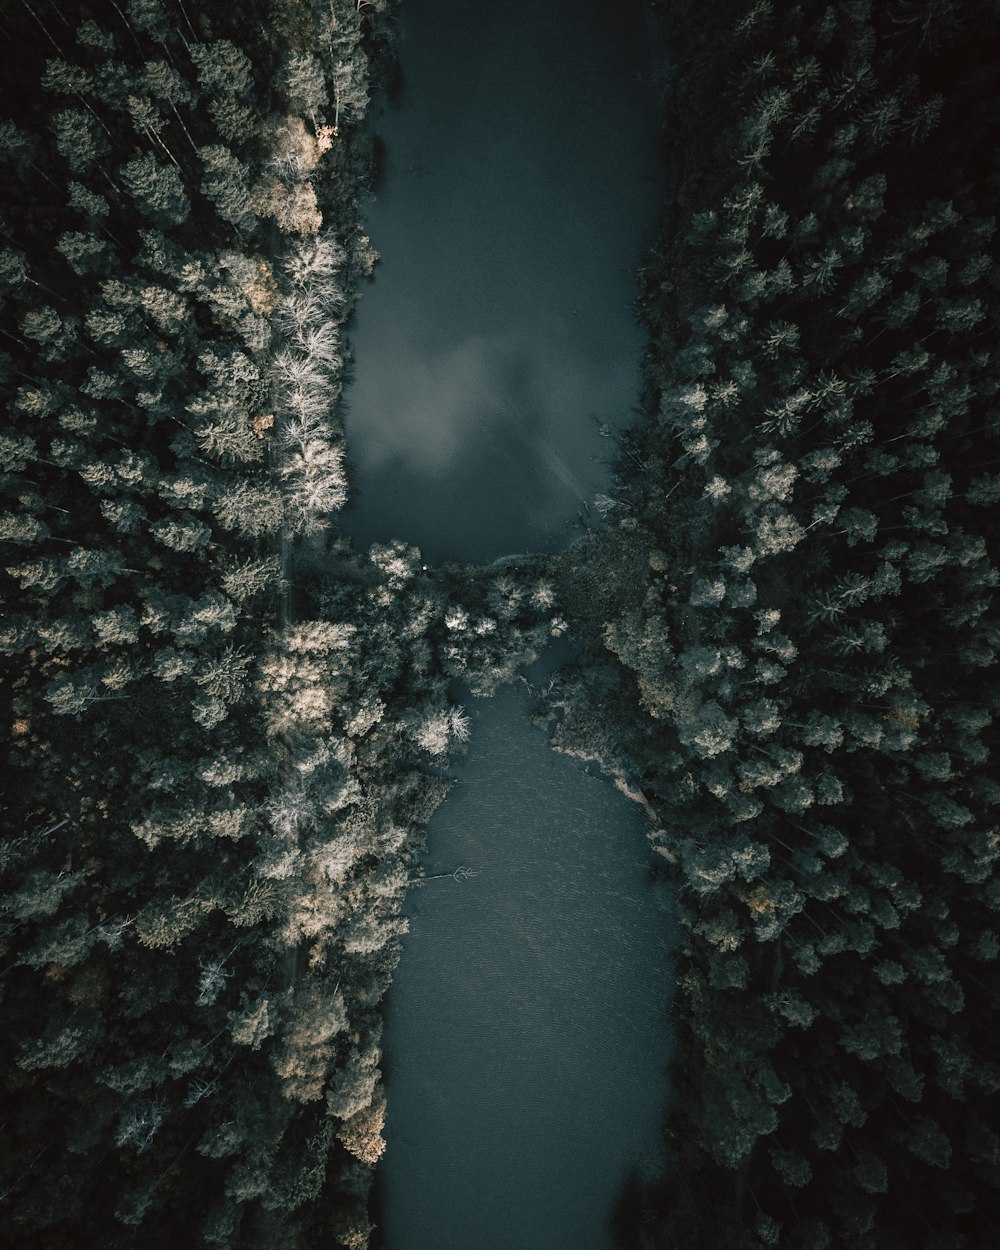 Vista aérea do lago verde cercado por árvores